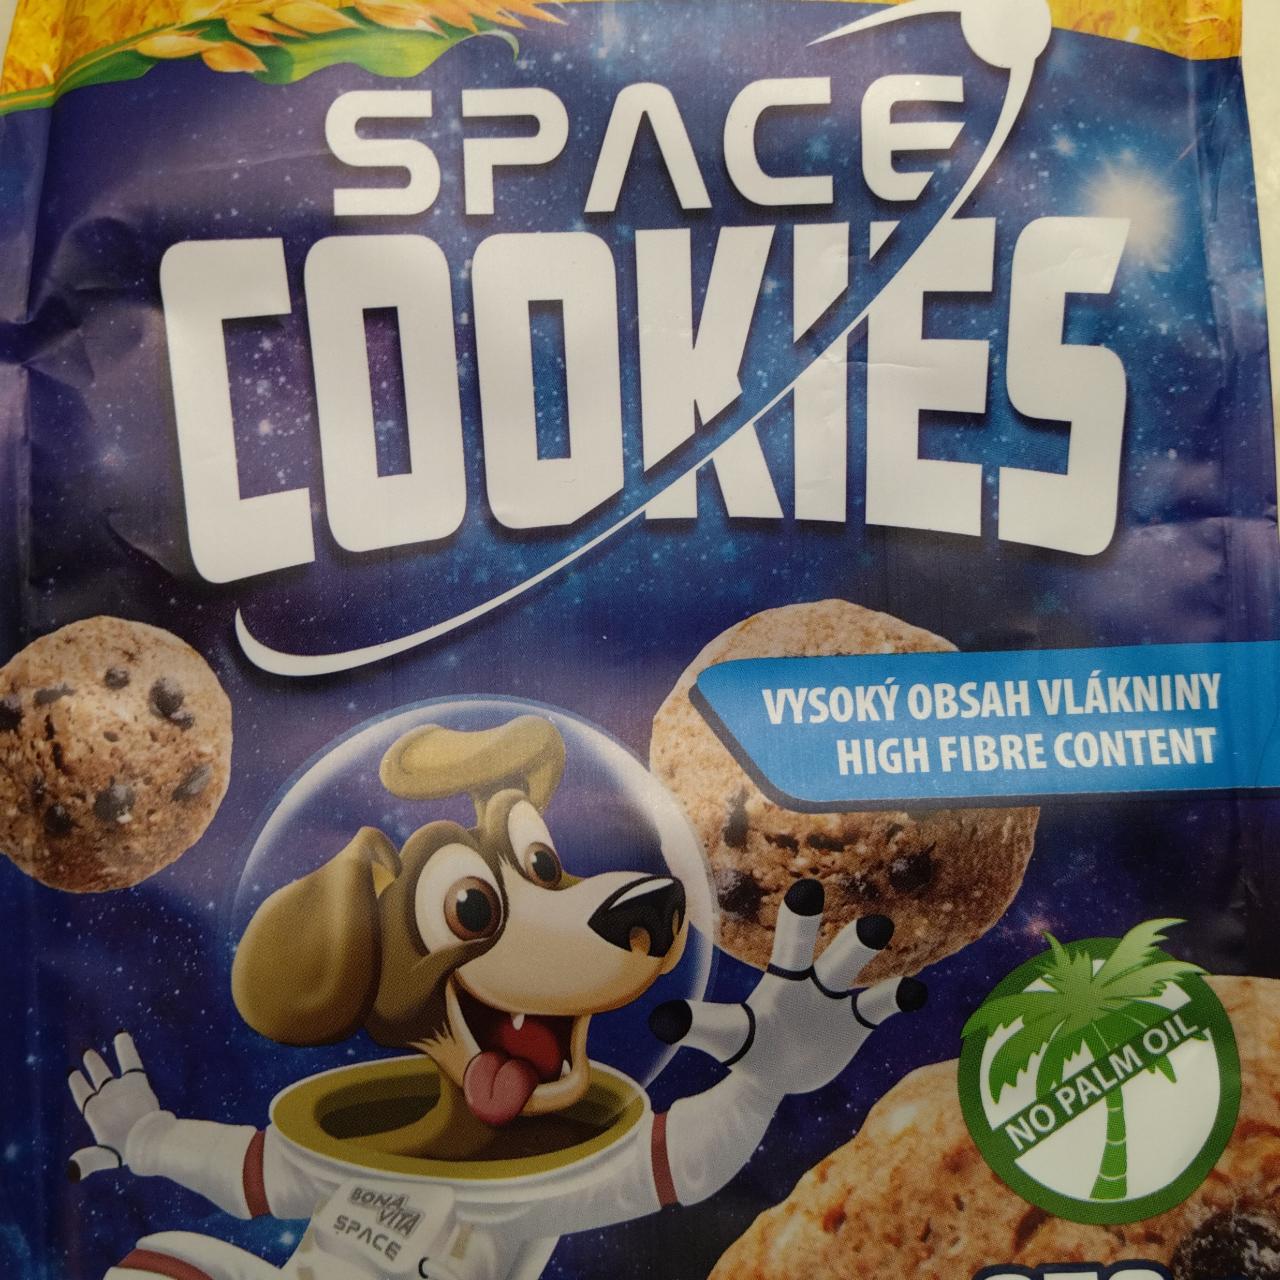 Képek - Space cookies BonaVita